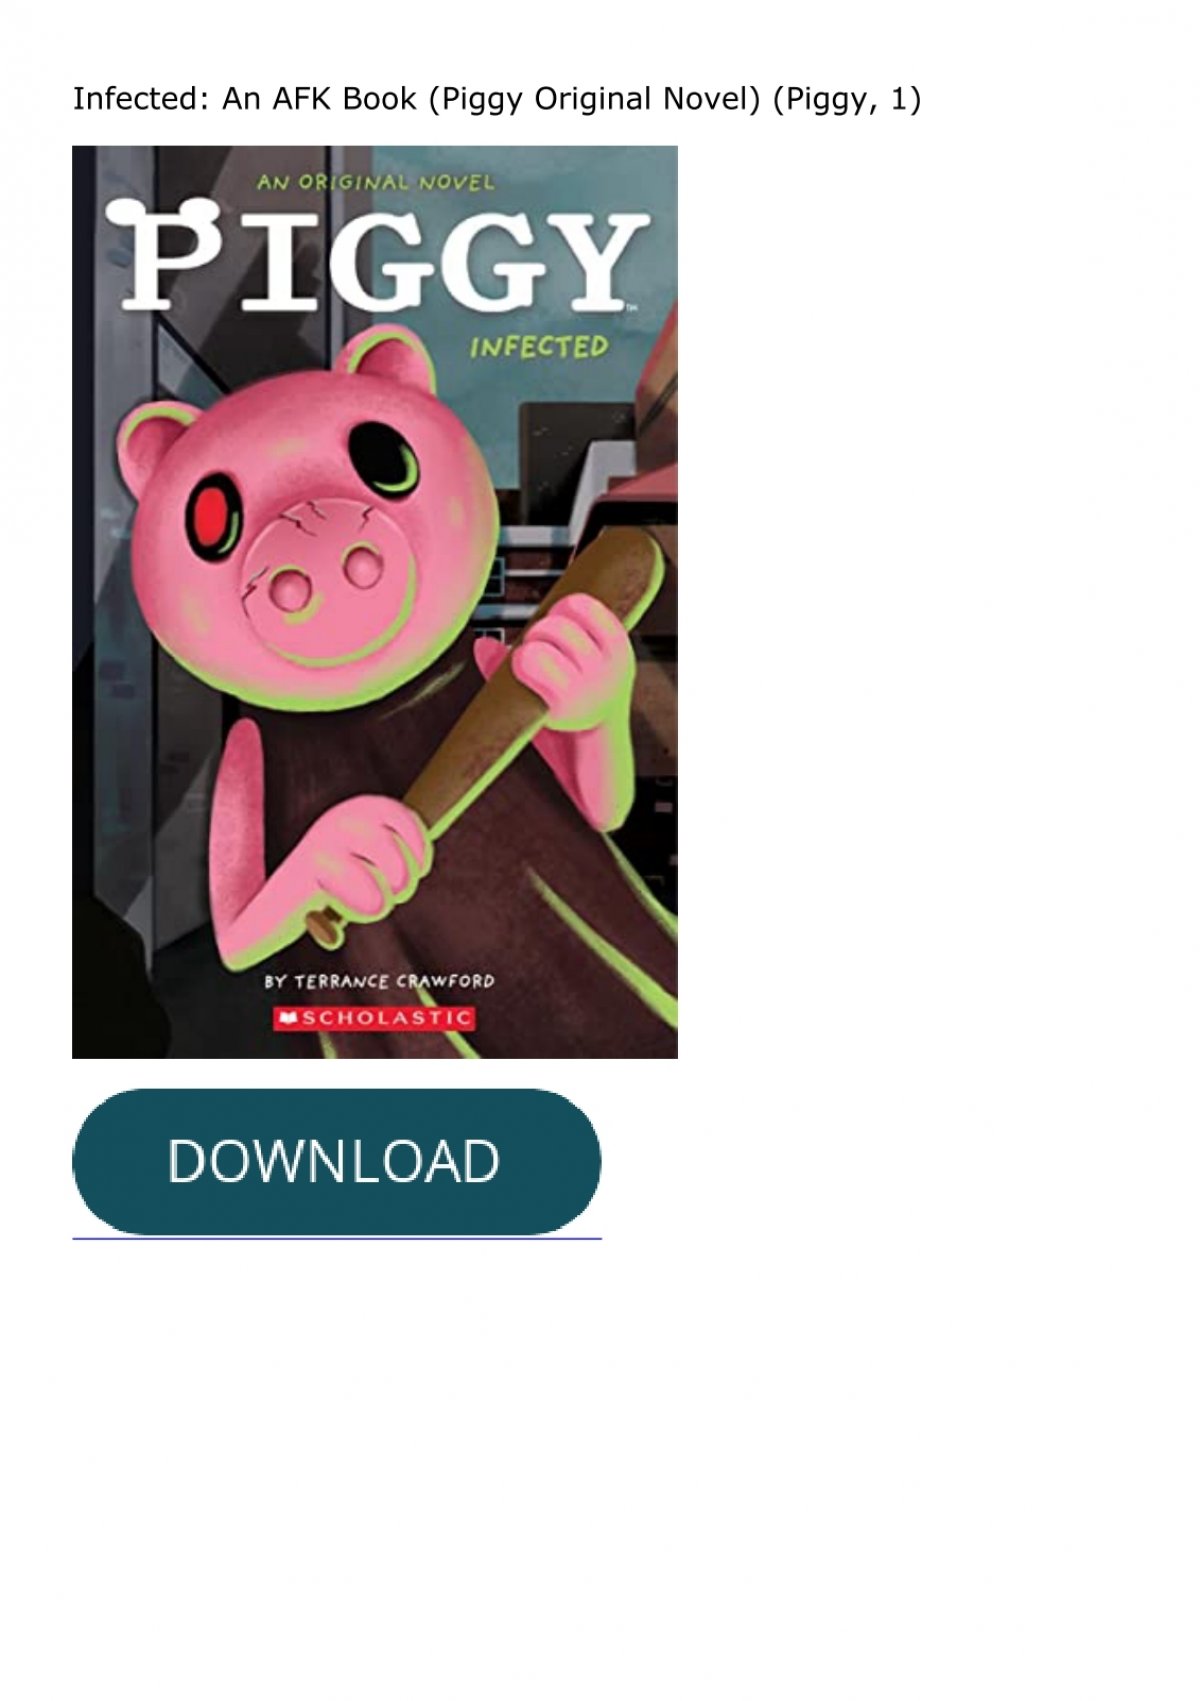 Infected: An AFK Book (Piggy Original Novel)